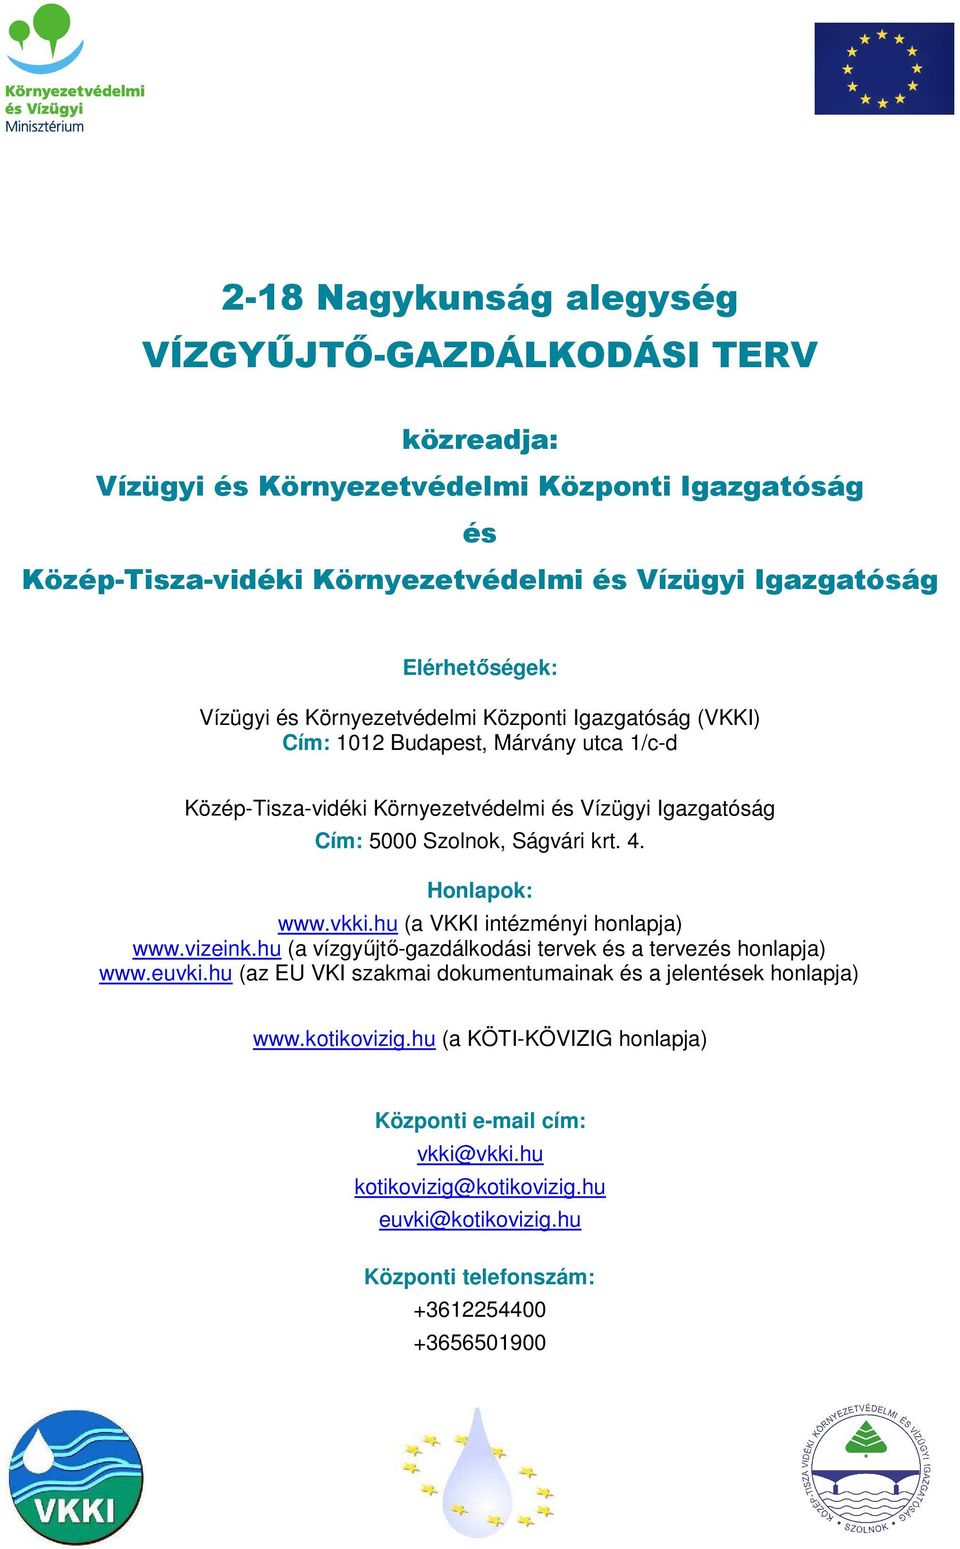 Ságvári krt. 4. Honlapok: www.vkki.hu (a VKKI intézményi honlapja) www.vizeink.hu (a vízgyűjtő-gazdálkodási tervek és a tervezés honlapja) www.euvki.